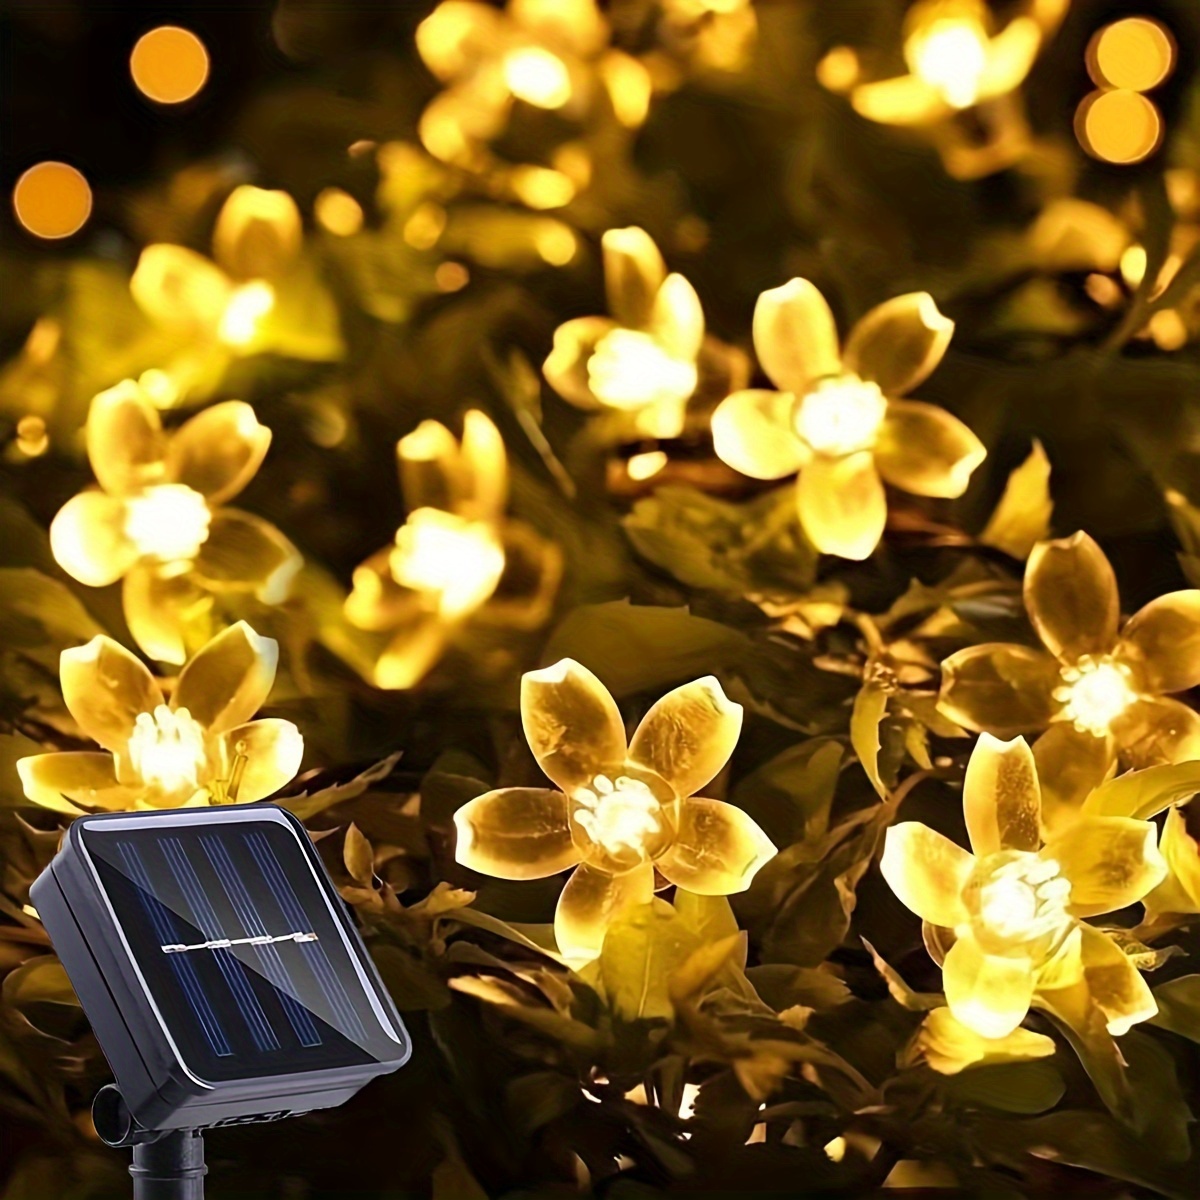 Lierre Artificielle Guirlande Lumineuse Exterieure LED Décoration pour  Célébration, Mariage, Jardin, Balcon - 2m avec 20 Lumières